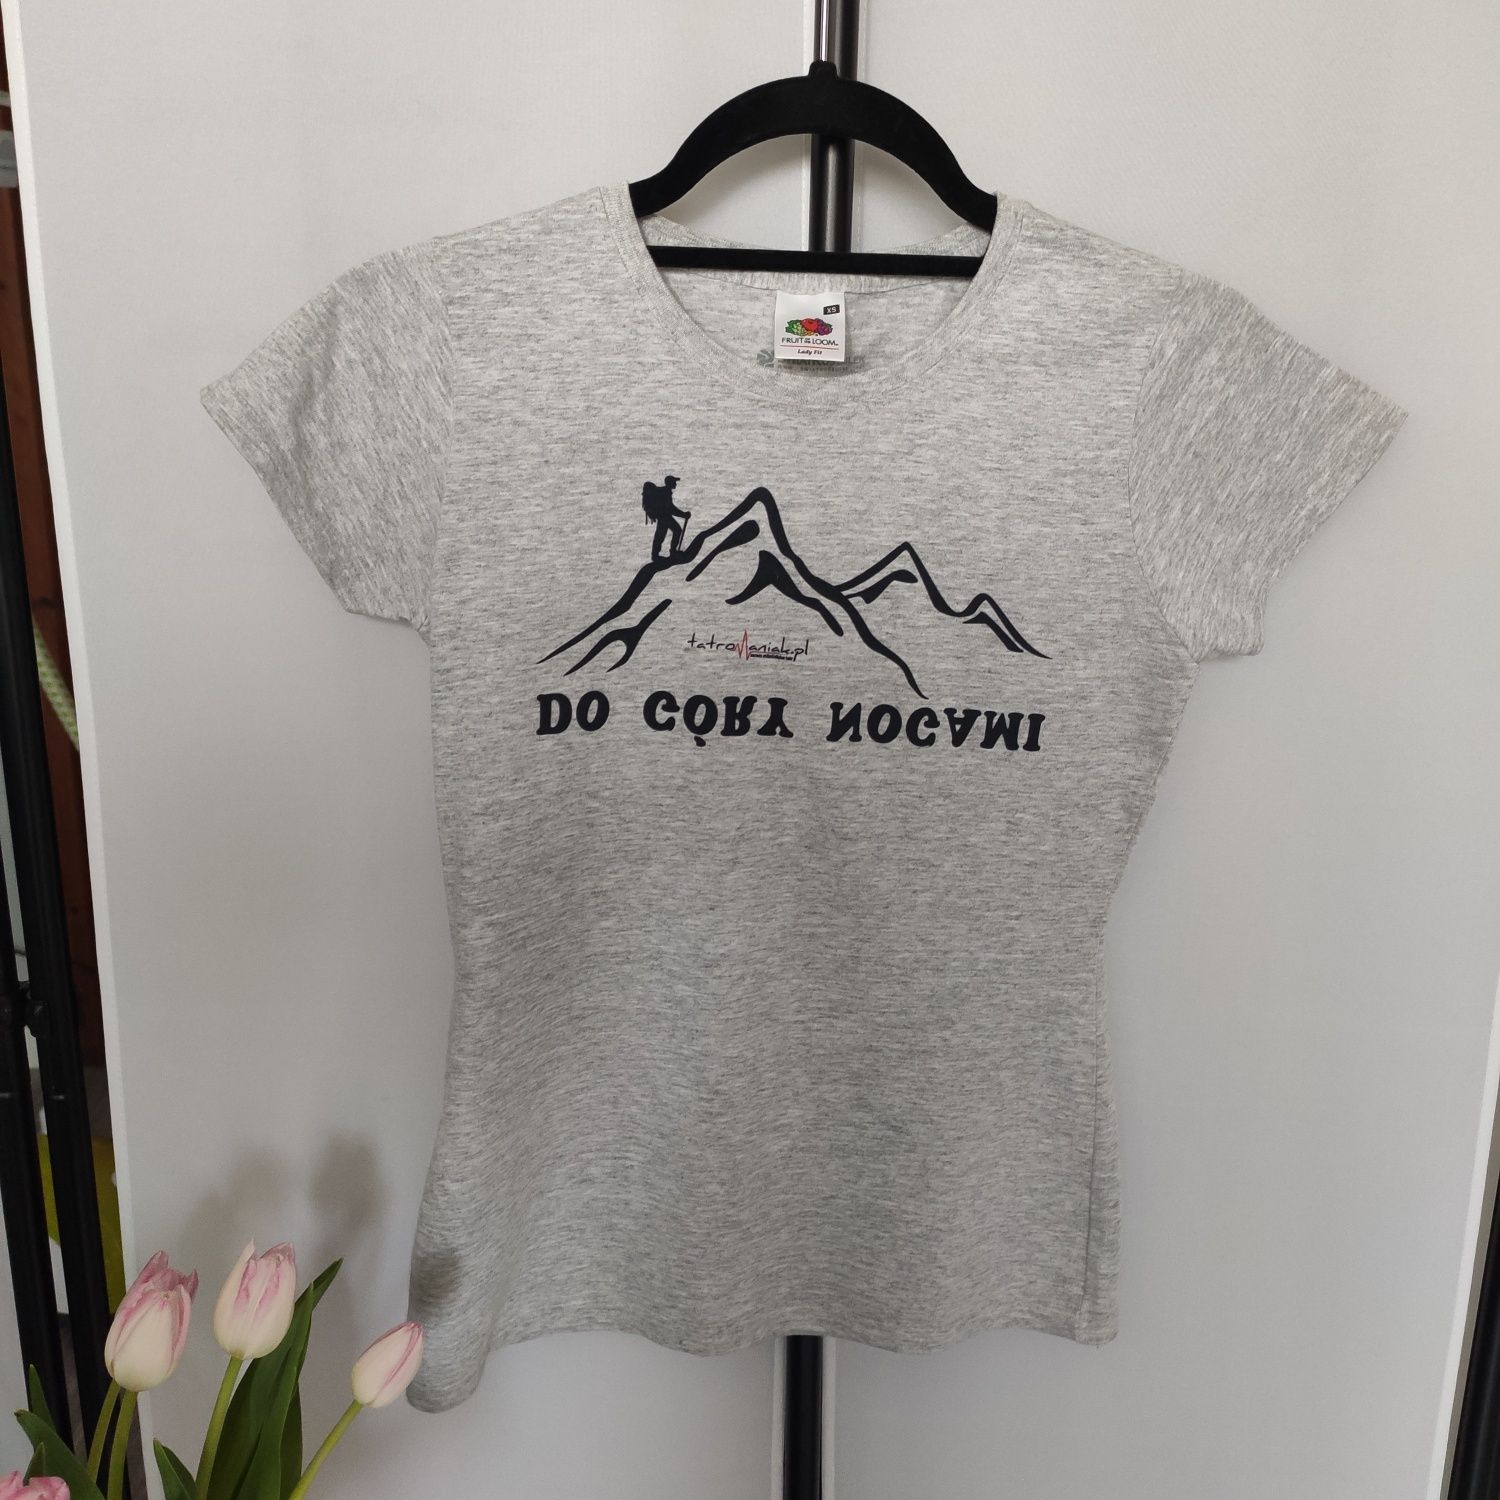 Koszulka t-shirt sportowy górski do góry nogami tatromaniak